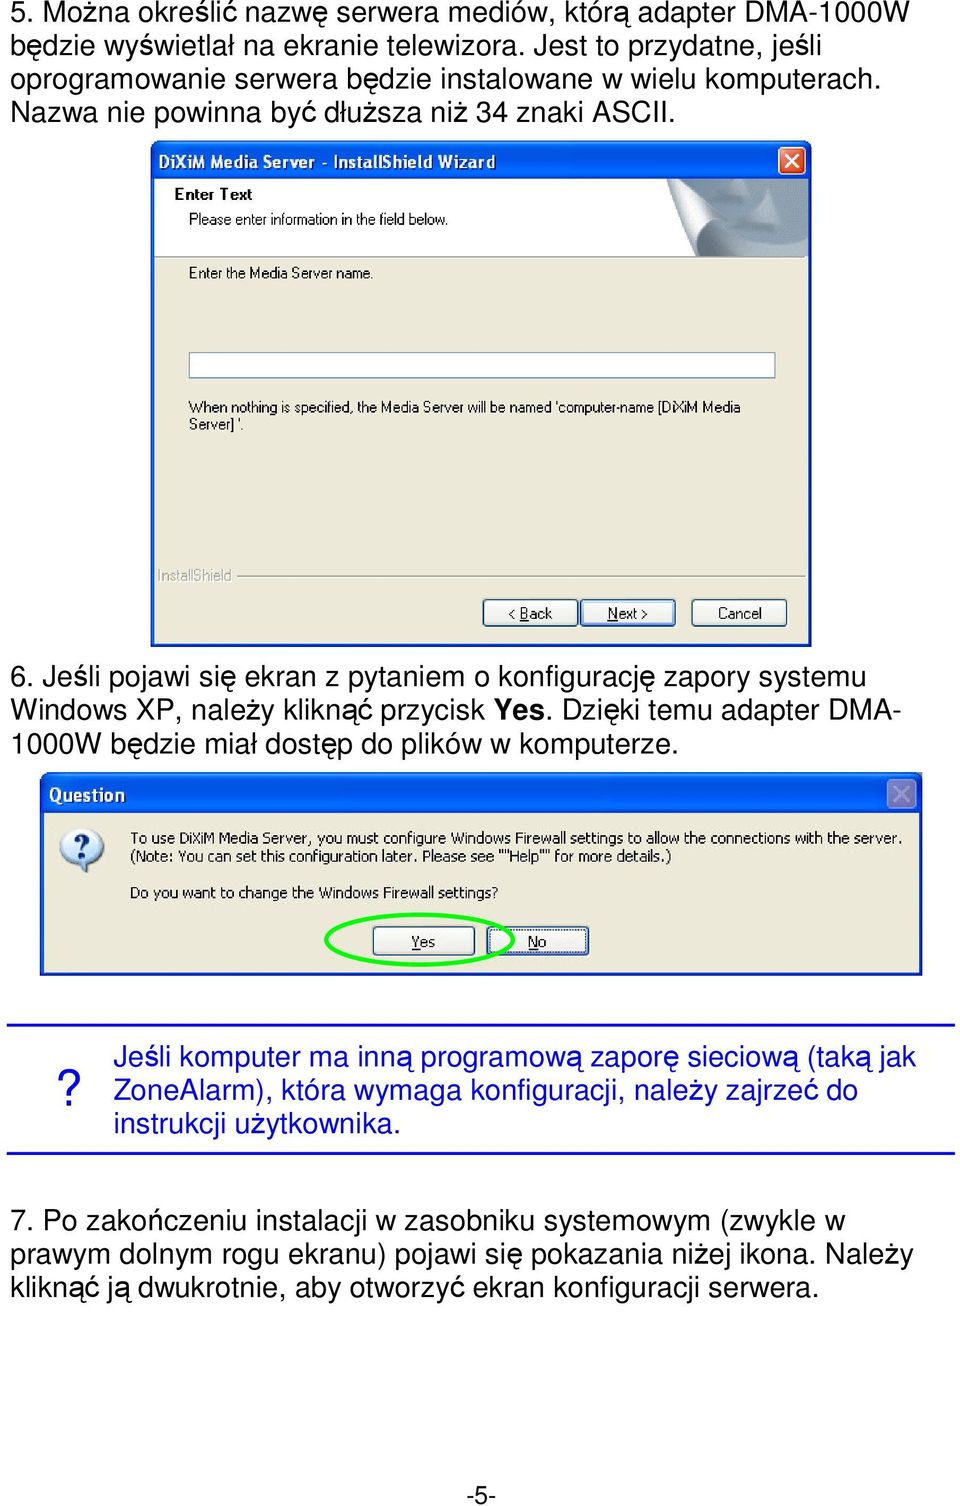 Jeśli pojawi się ekran z pytaniem o konfigurację zapory systemu Windows XP, należy kliknąć przycisk Yes. Dzięki temu adapter DMA- 1000W będzie miał dostęp do plików w komputerze.